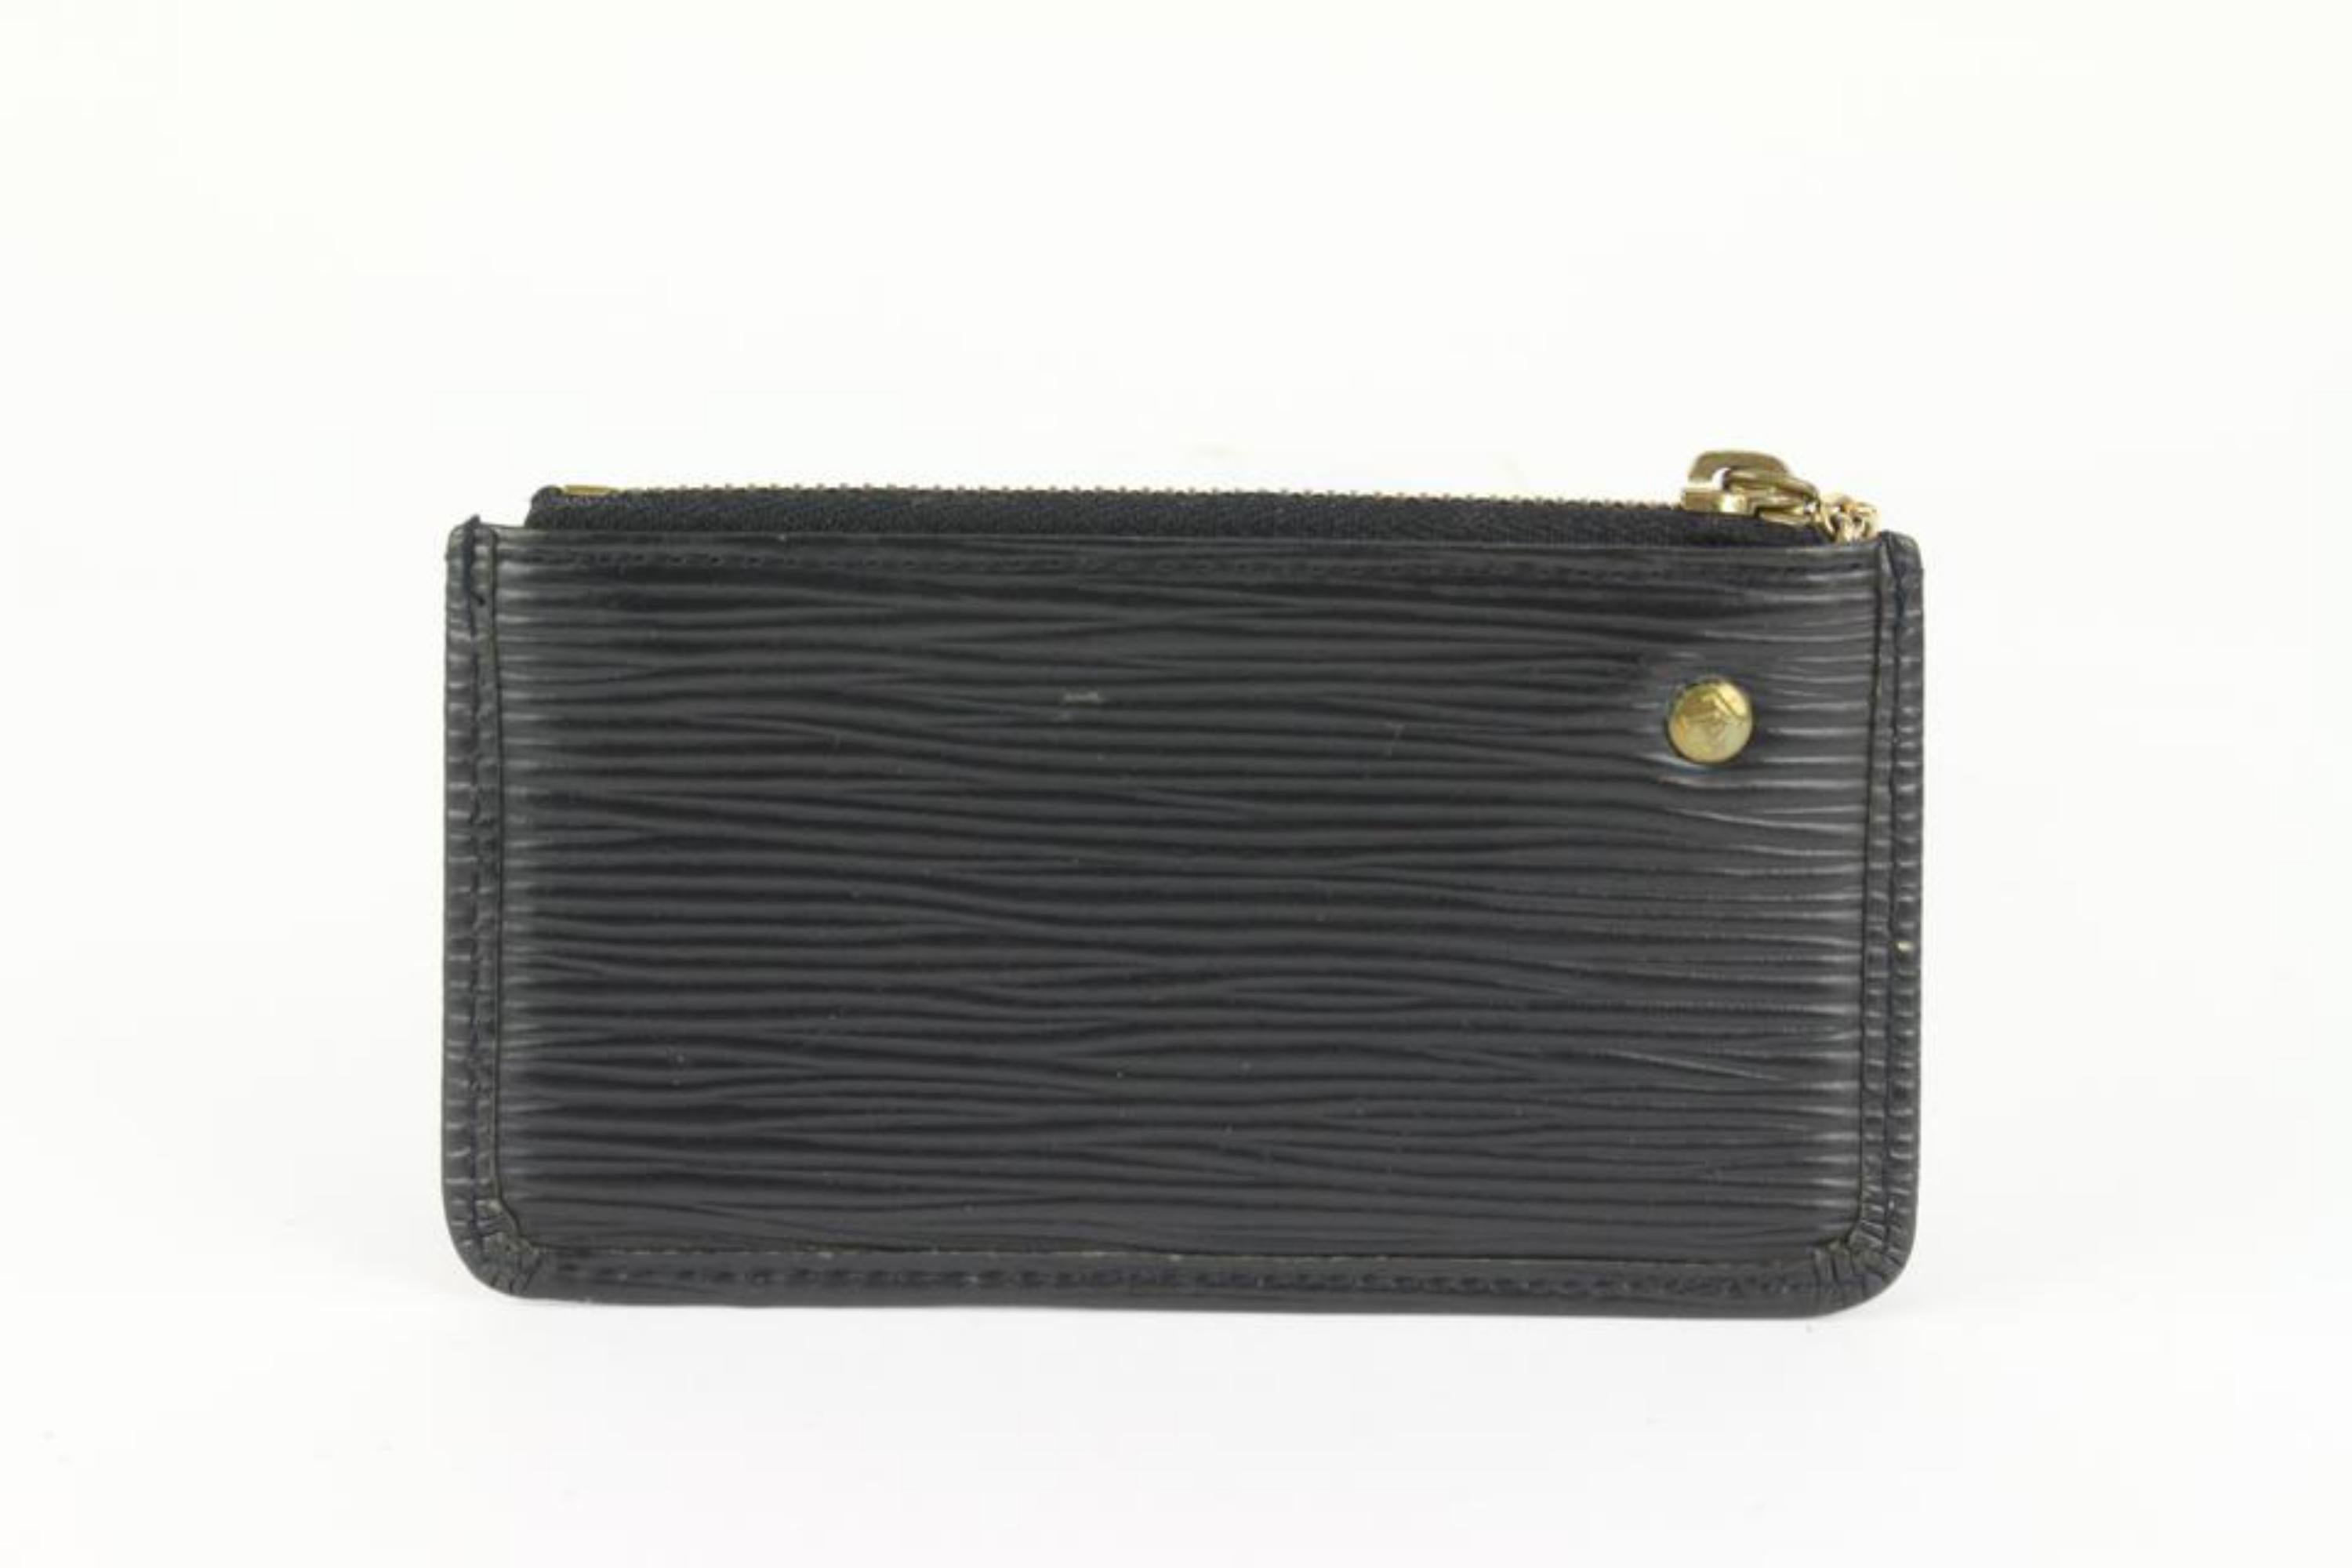 Louis Vuitton Black Epi Leather Noir Pochette Cles Key Pouch 1029lv38 For Sale 3